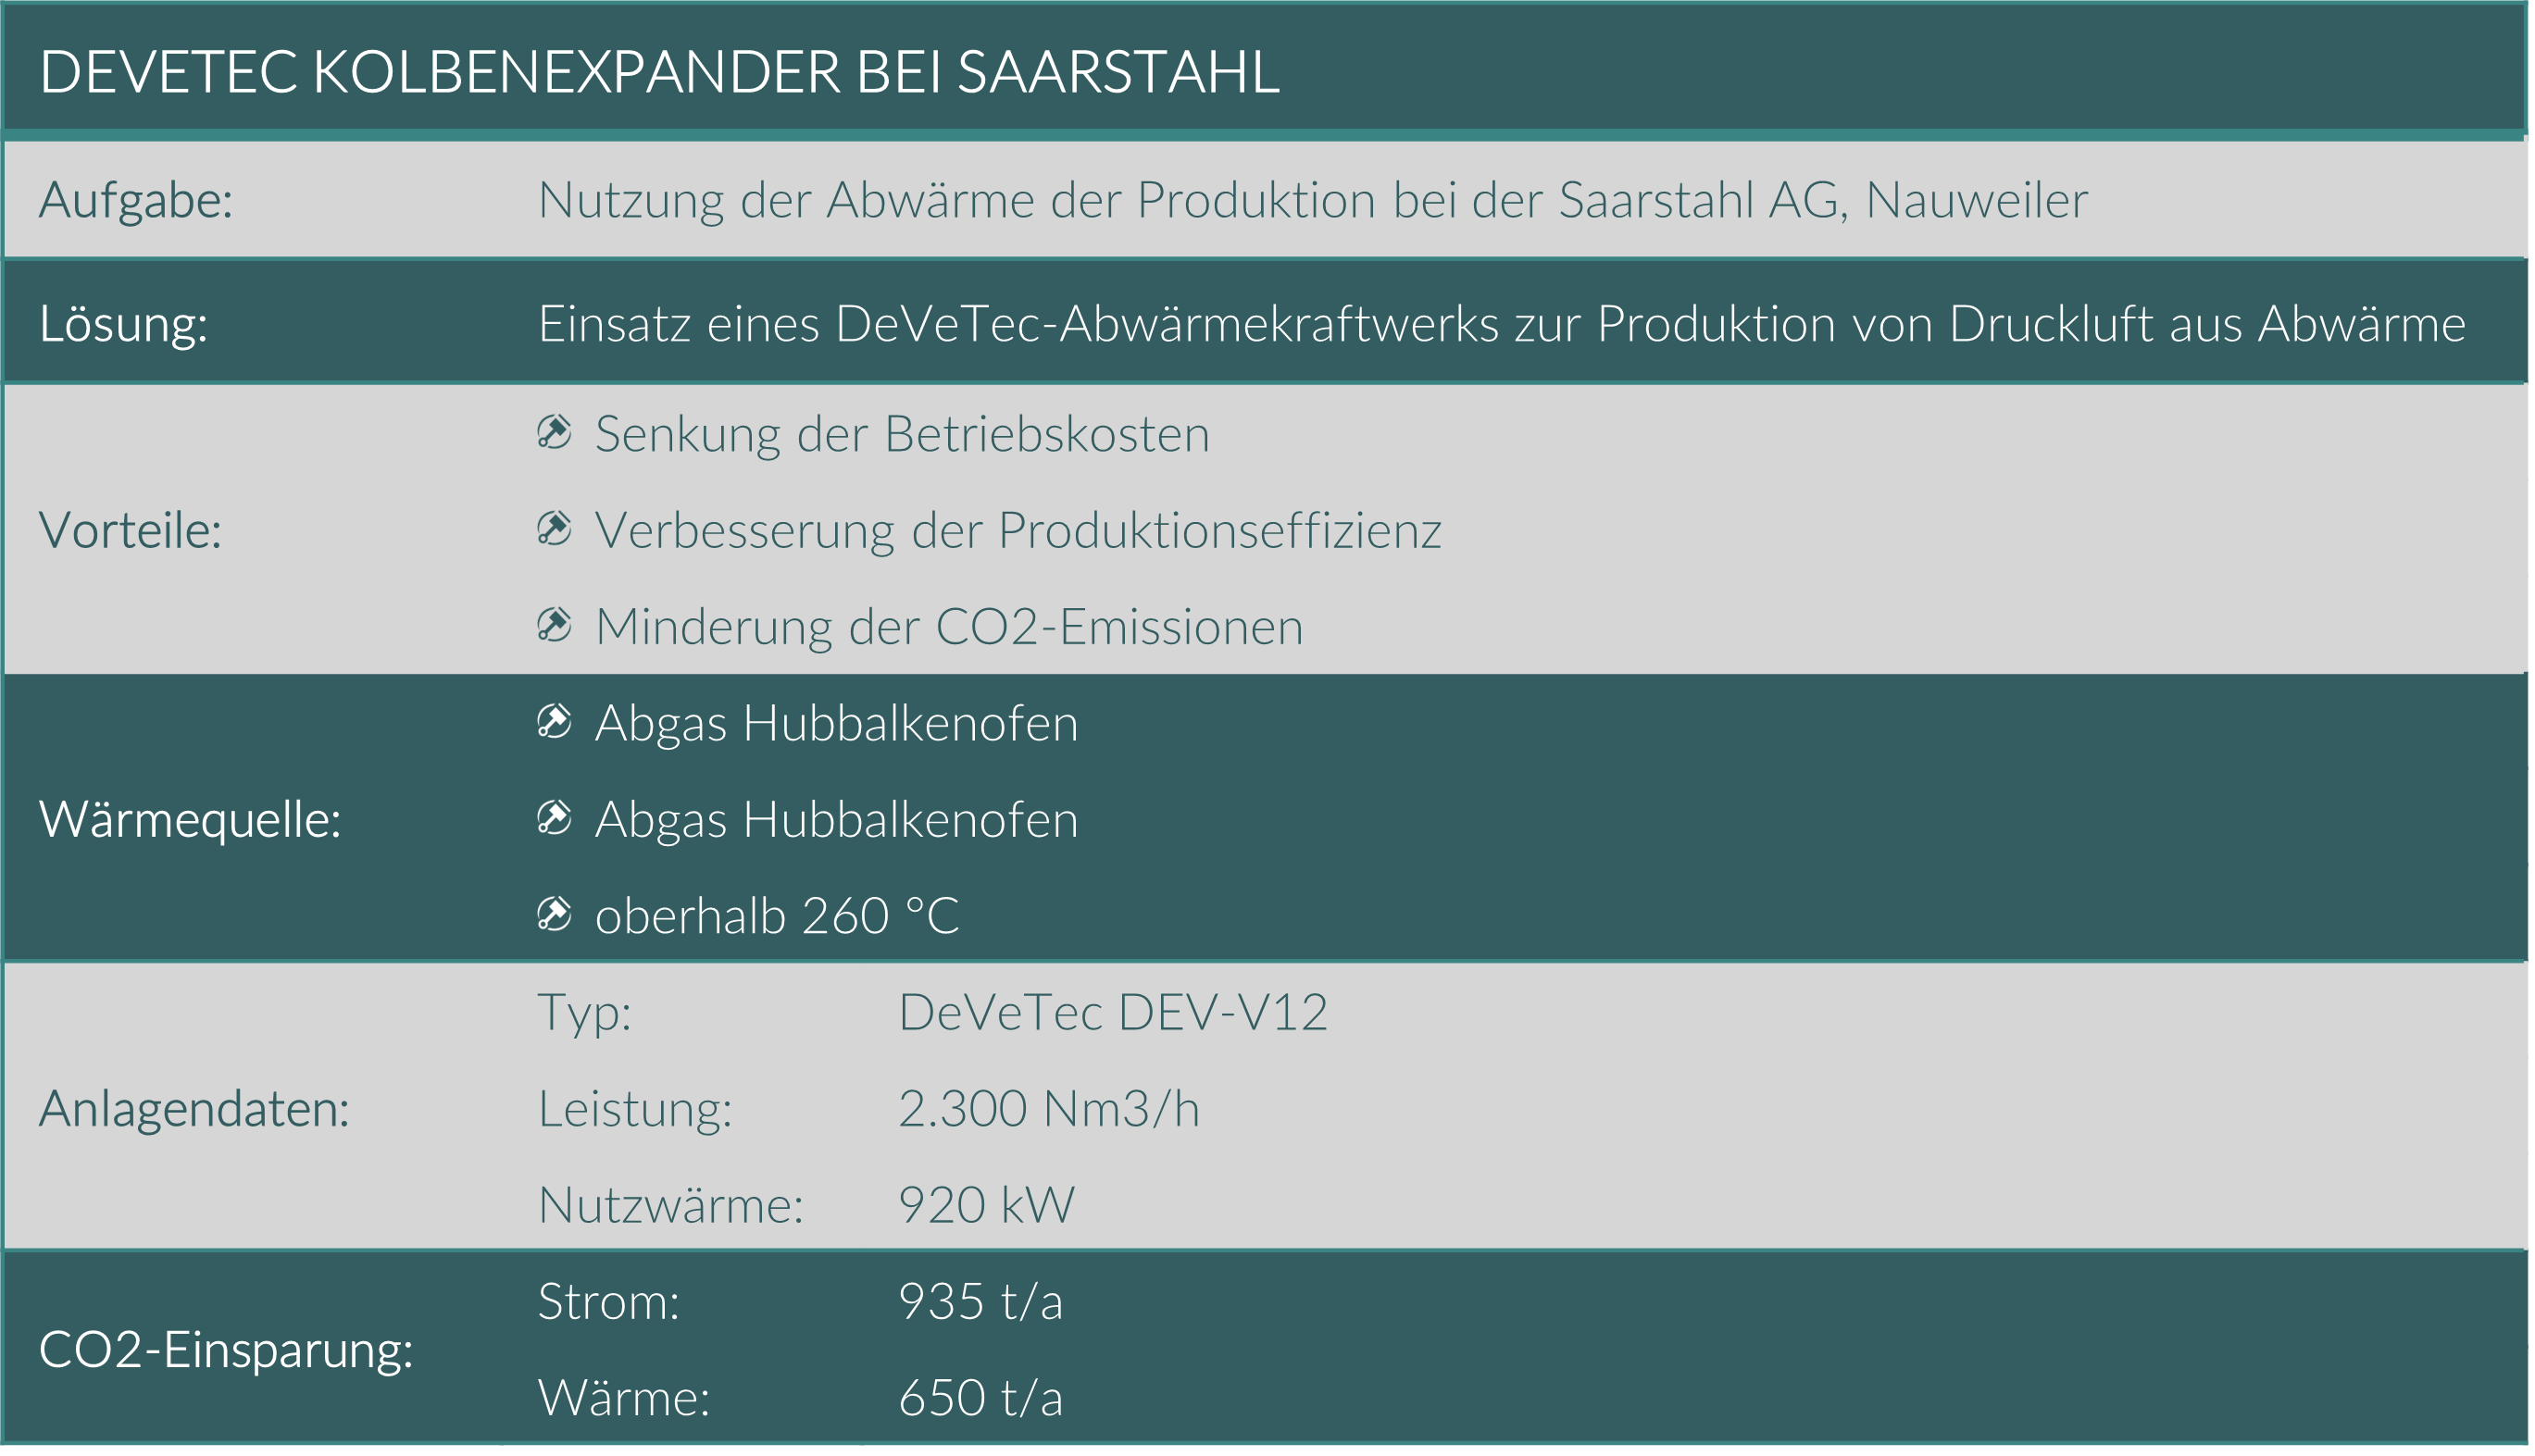 Überblick über das DeVeTec Abwärmekraftwerk zur Druckluftproduktion bei Saarstahl